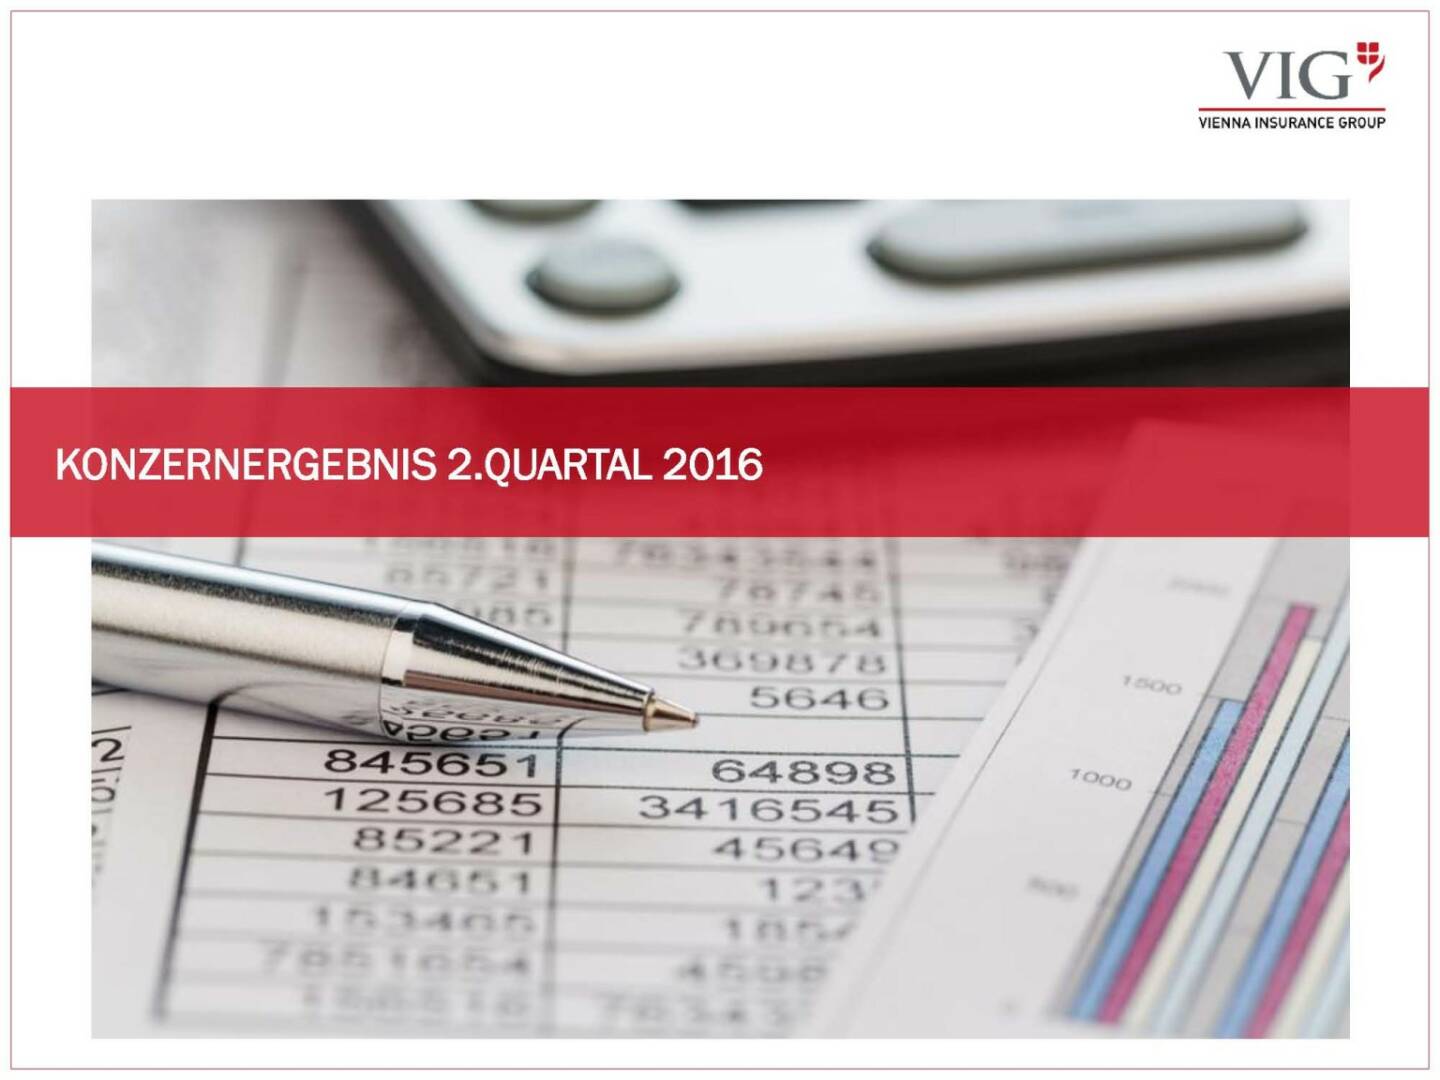 Vienna Insurance Group - Konzernergebnis 2. Quartal 2016